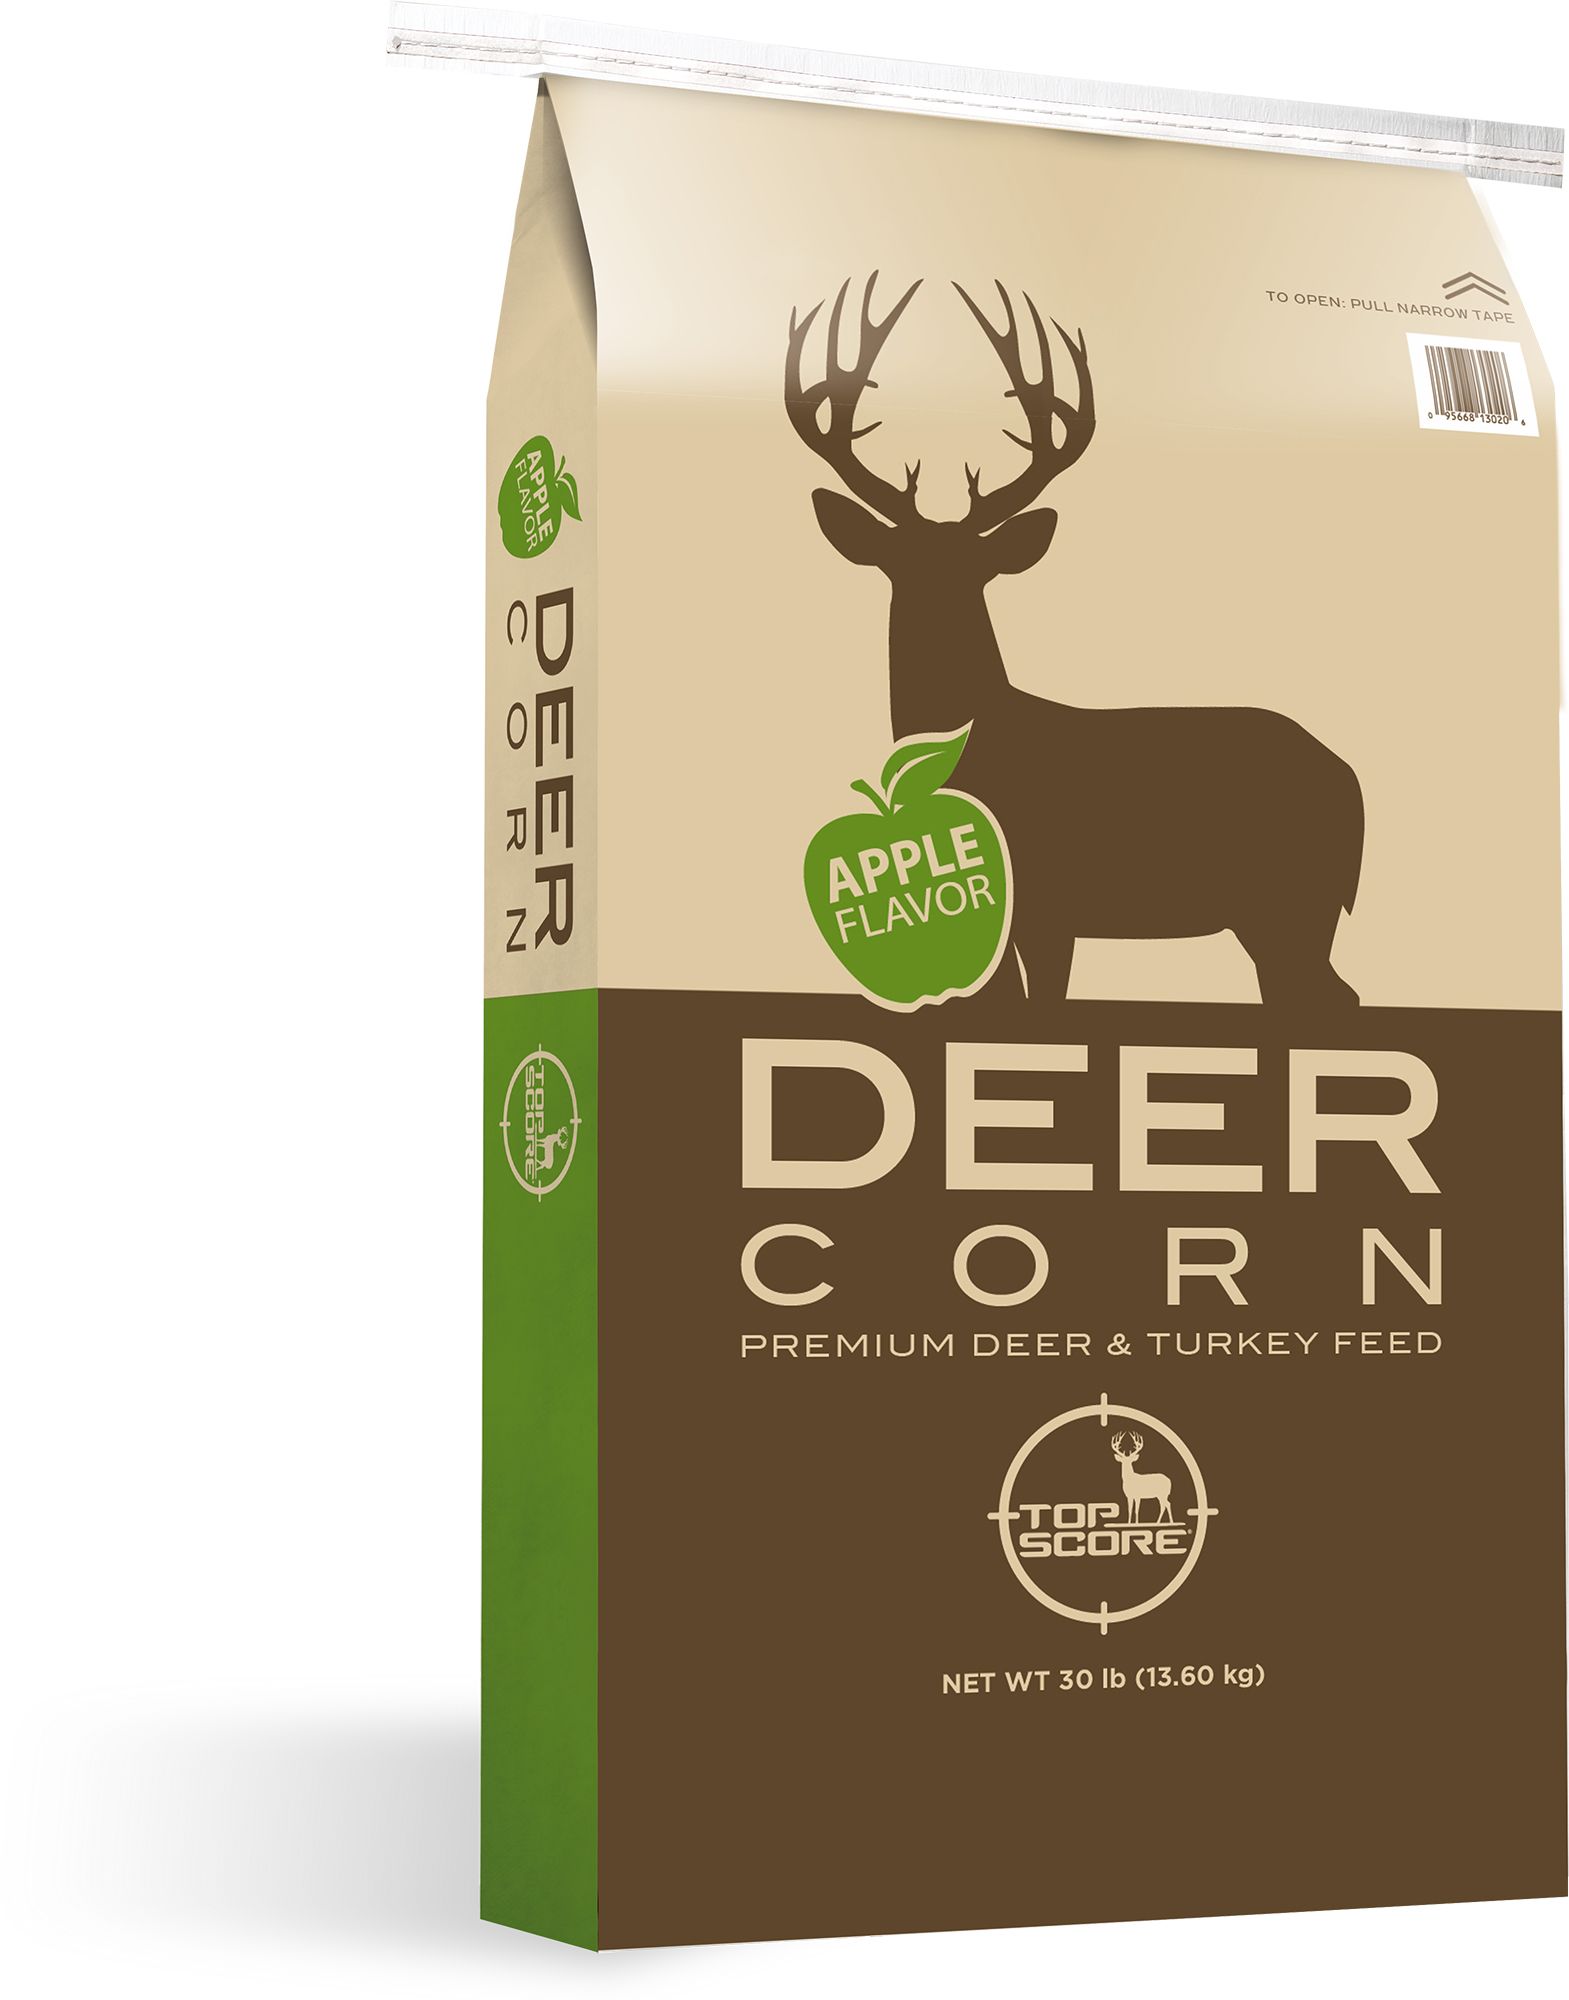 deer corn